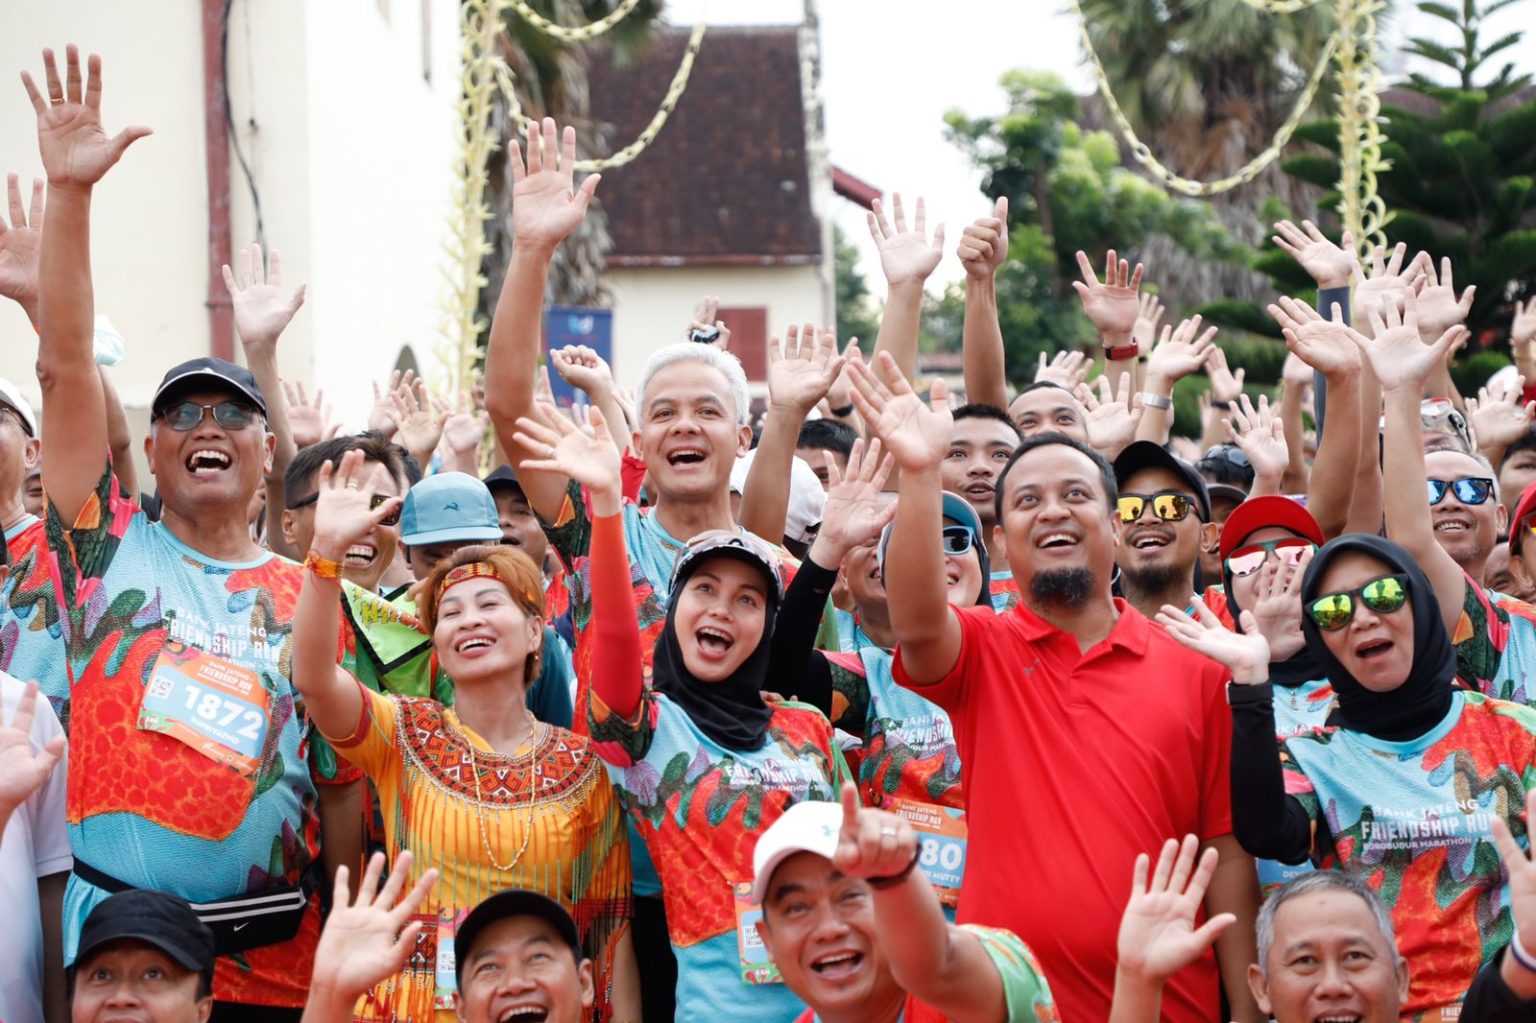 Bank Jateng Friendship Run di Makassar, Warga Antusias Lari Bareng Ganjar